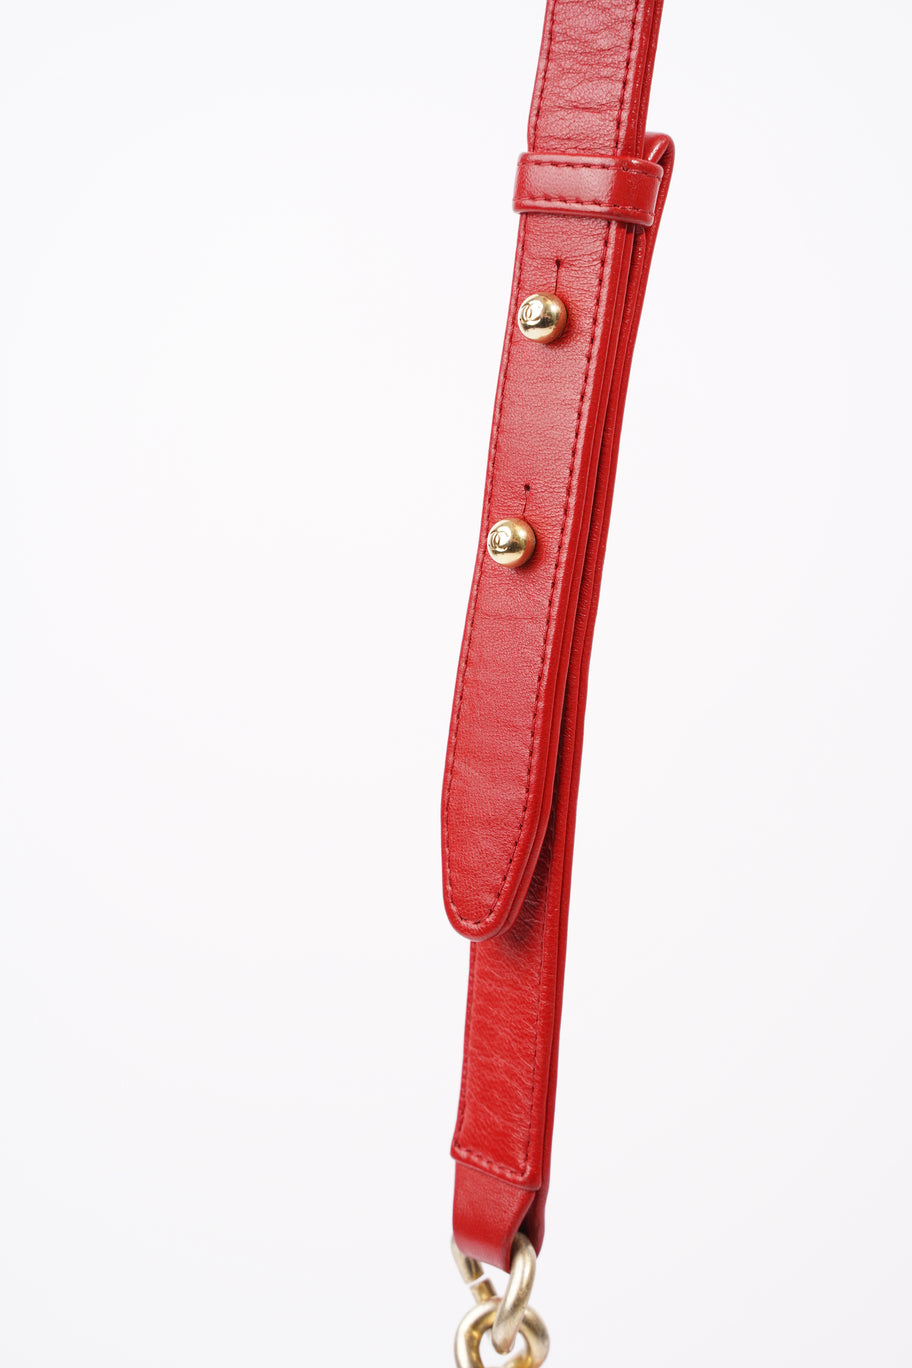 Boy Bag Red Calfskin Leather Large Image 14